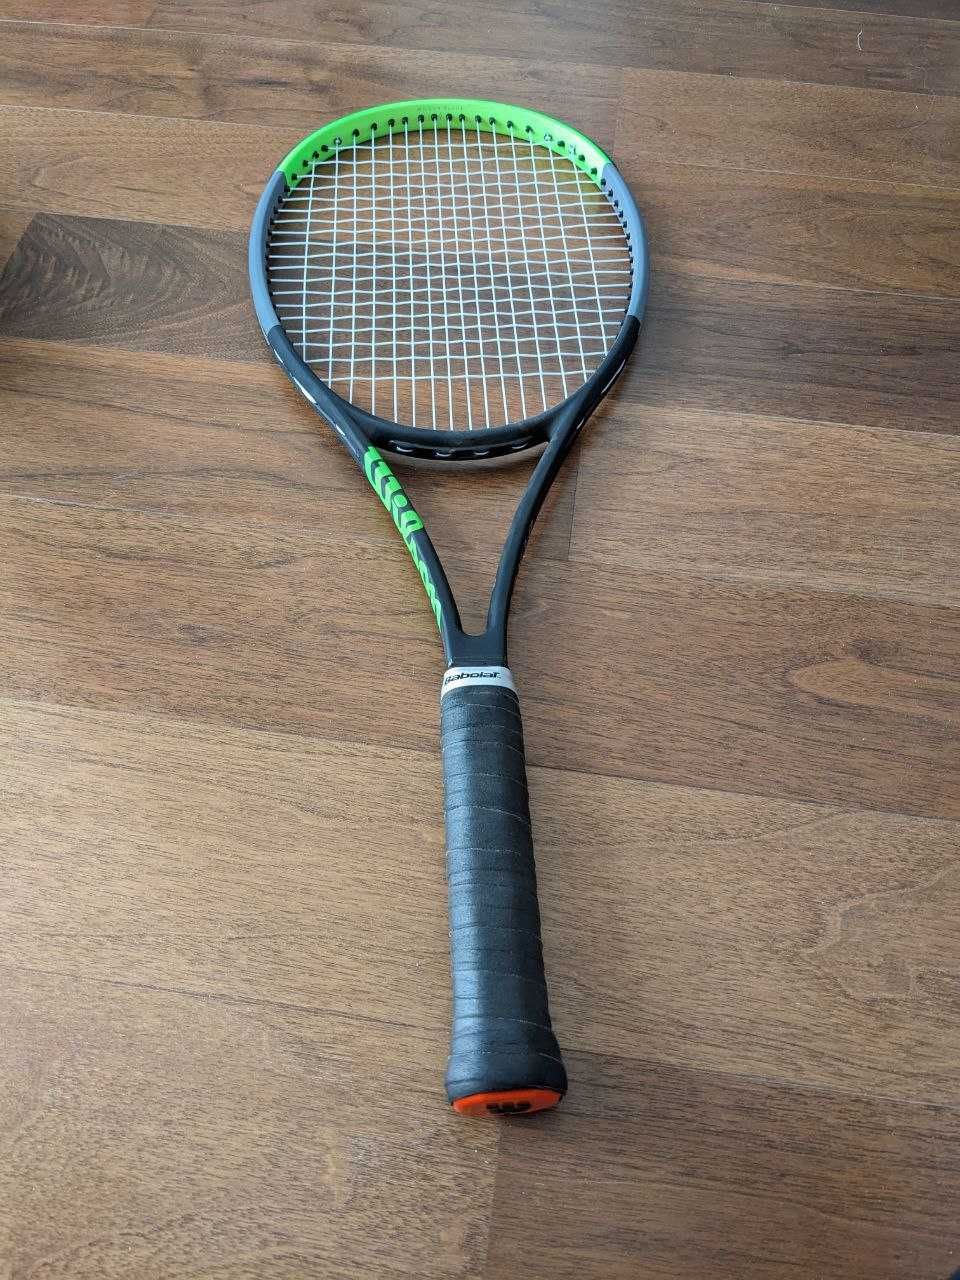 Теннисная ракетка Wilson blade 98 16х19 (305g) (4 часа игры)